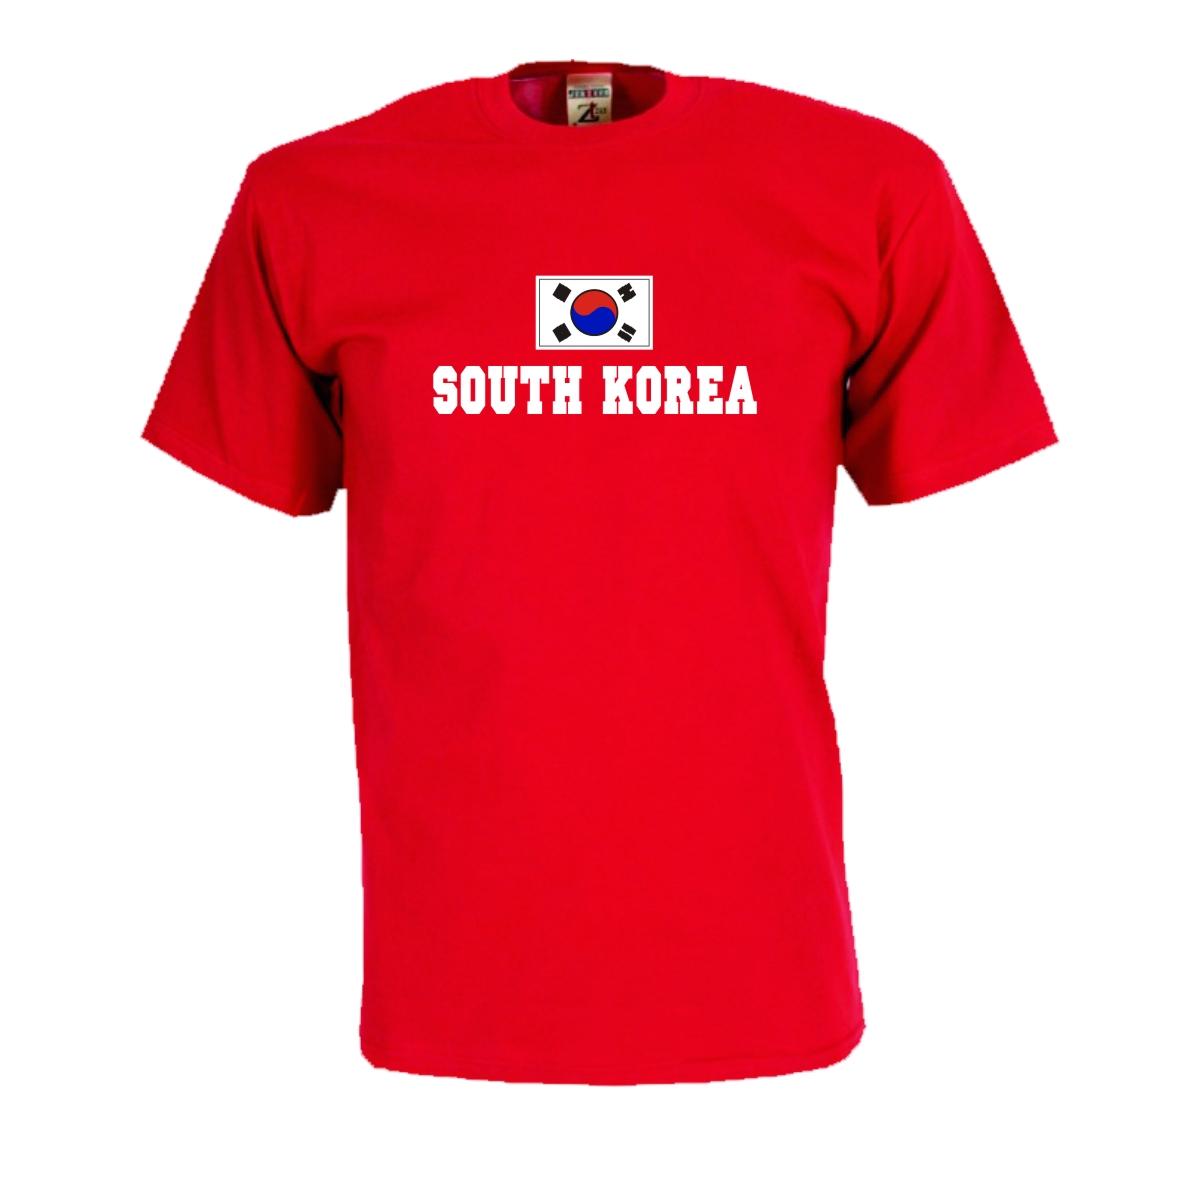 T-Shirt SÜDKOREA (South Korea), Flagshirt, Fanshirt bei theil-design